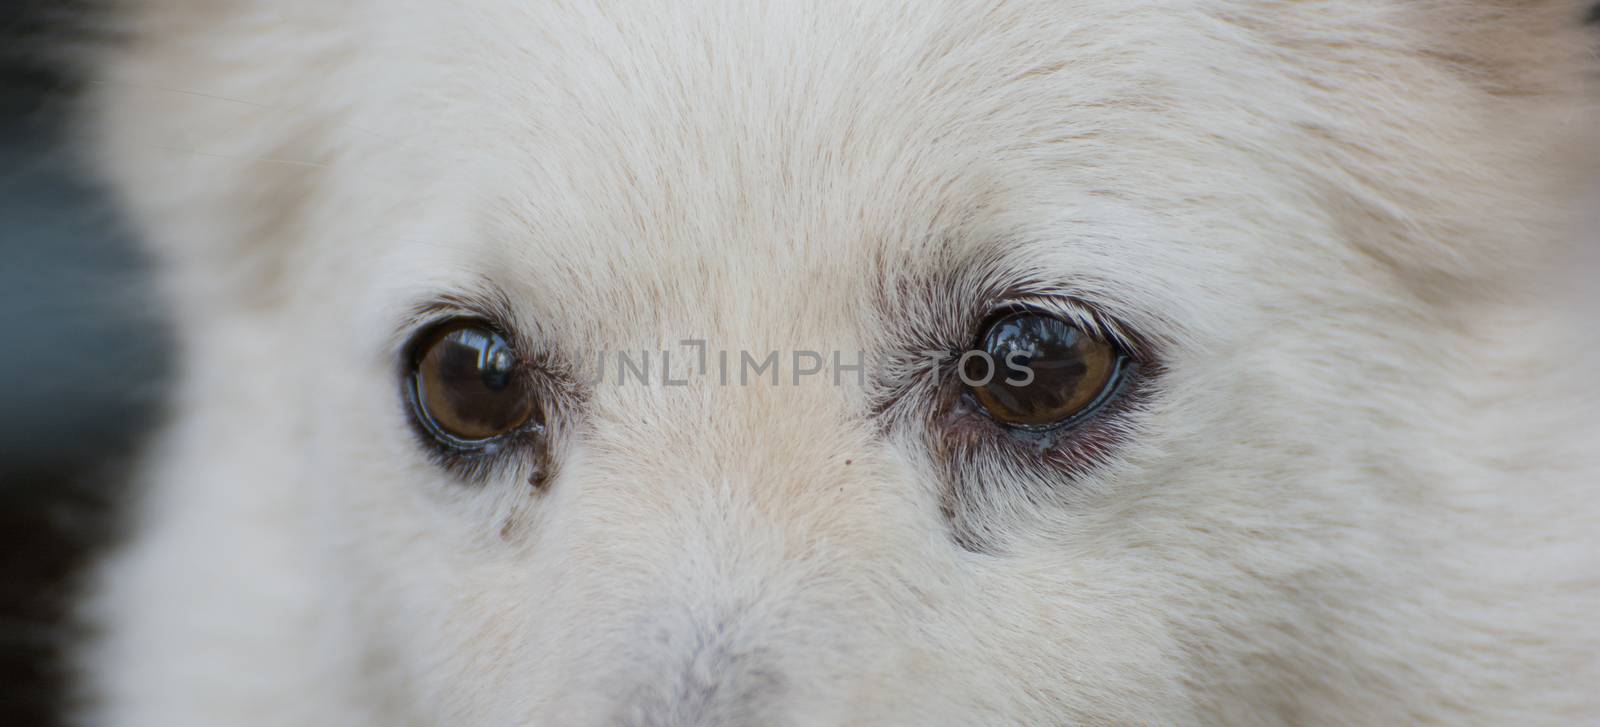 Eye of a cute shih tzu breed dog